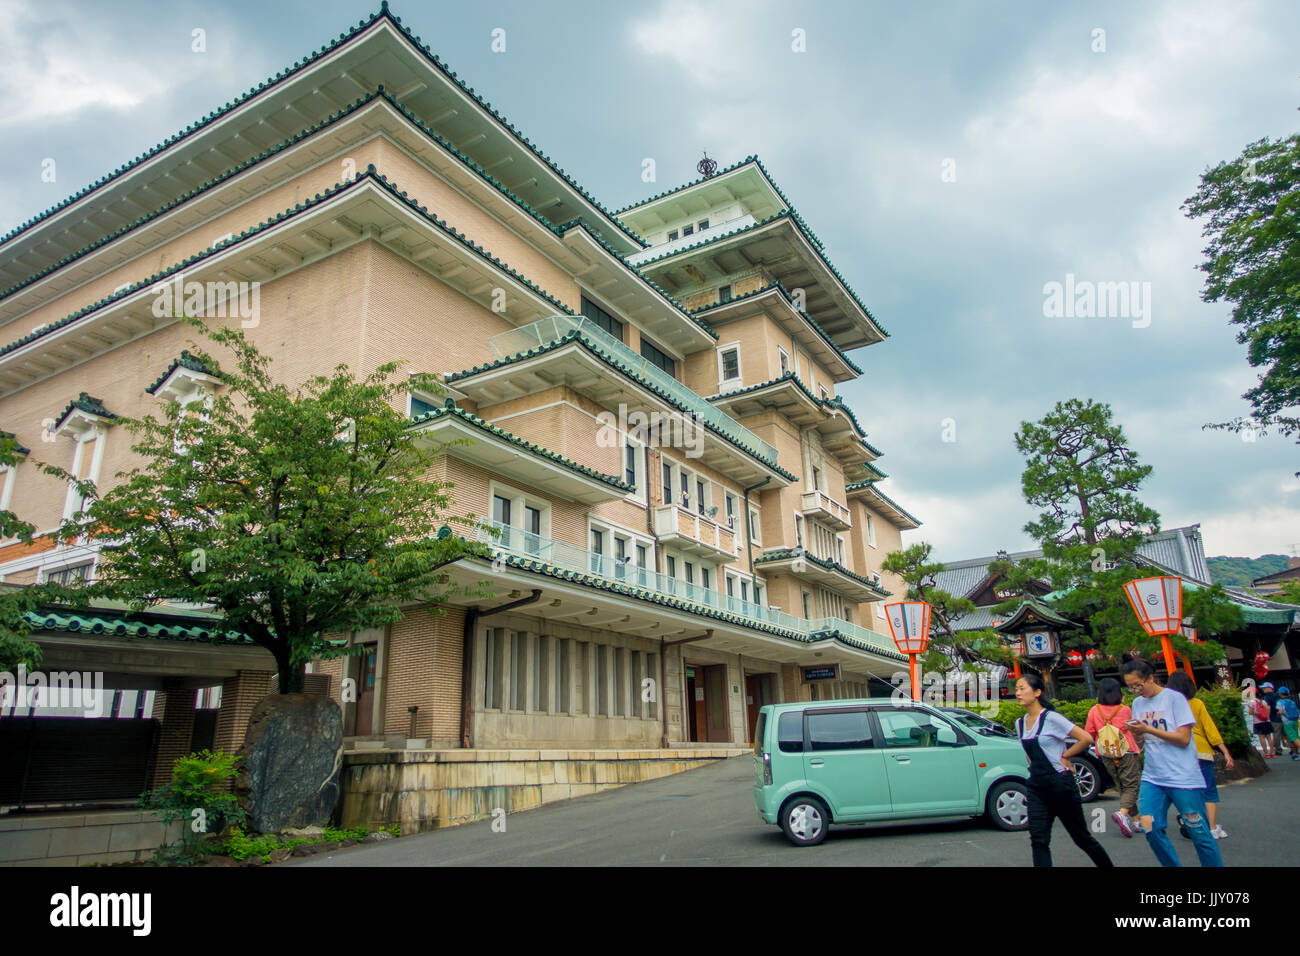 KYOTO, JAPON - Juillet 05, 2017 : Avis de Geisha japonaise traditionnelle, bâtiment de l'école dans l'ancien quartier Higashi Chaya geisha. Higashi est un lieu charmant w Banque D'Images